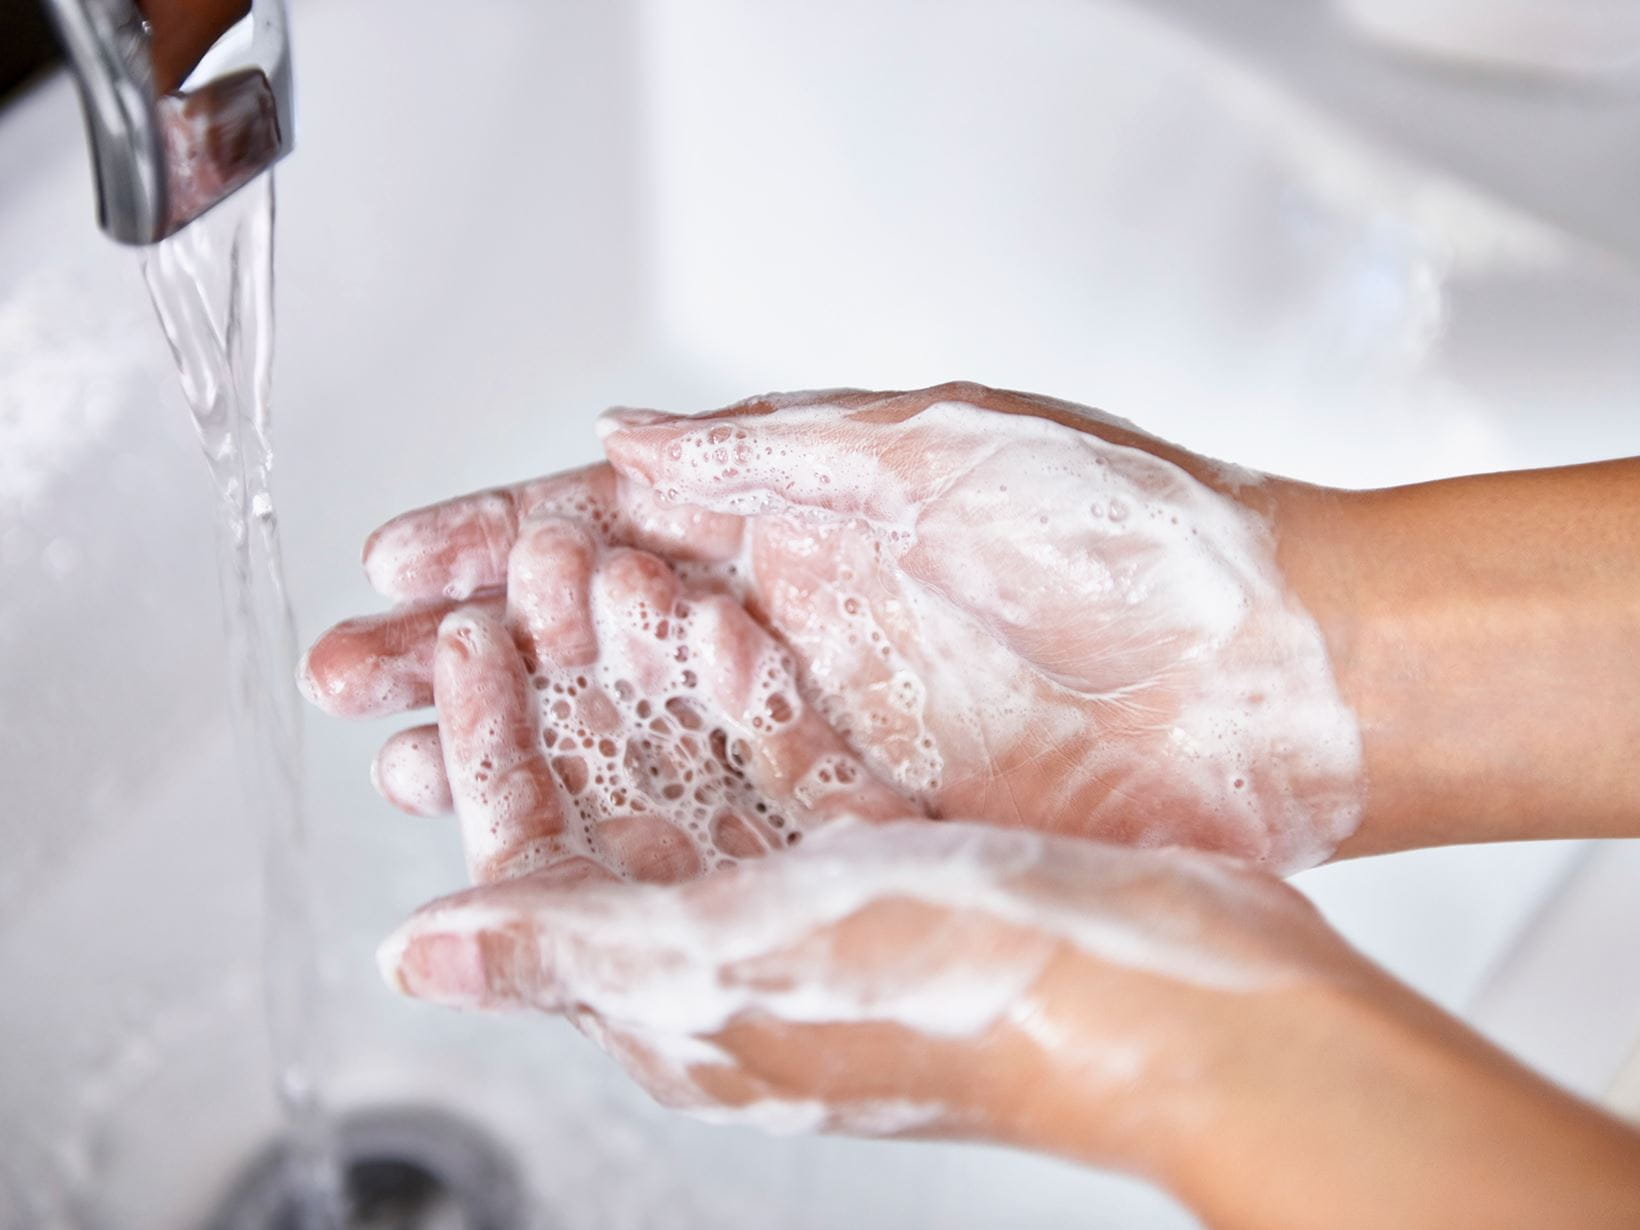 Lavar as mãos debaixo da torneira